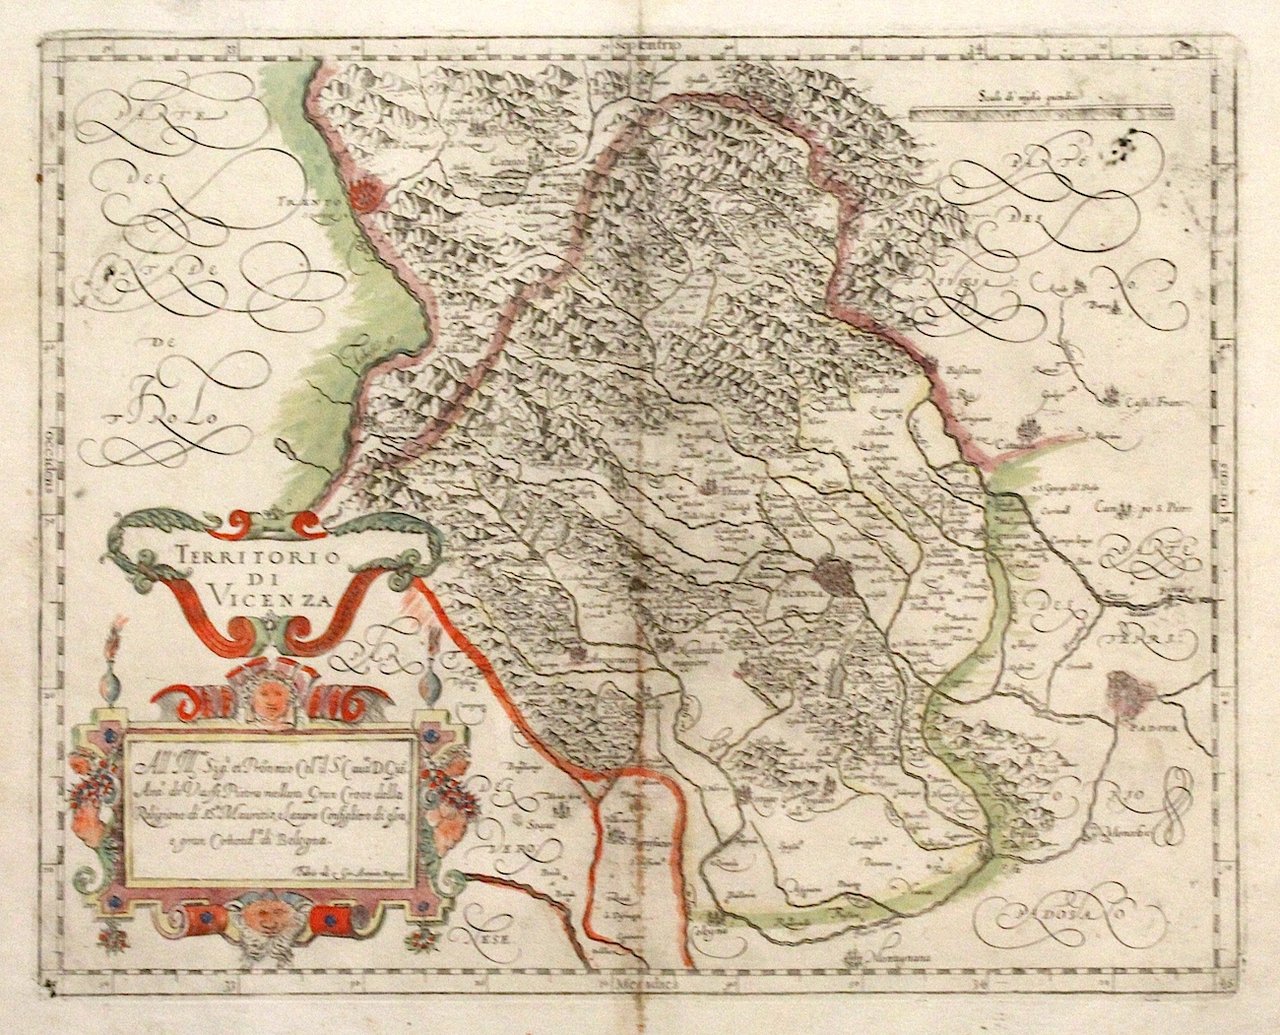 Territorio di Vicenza